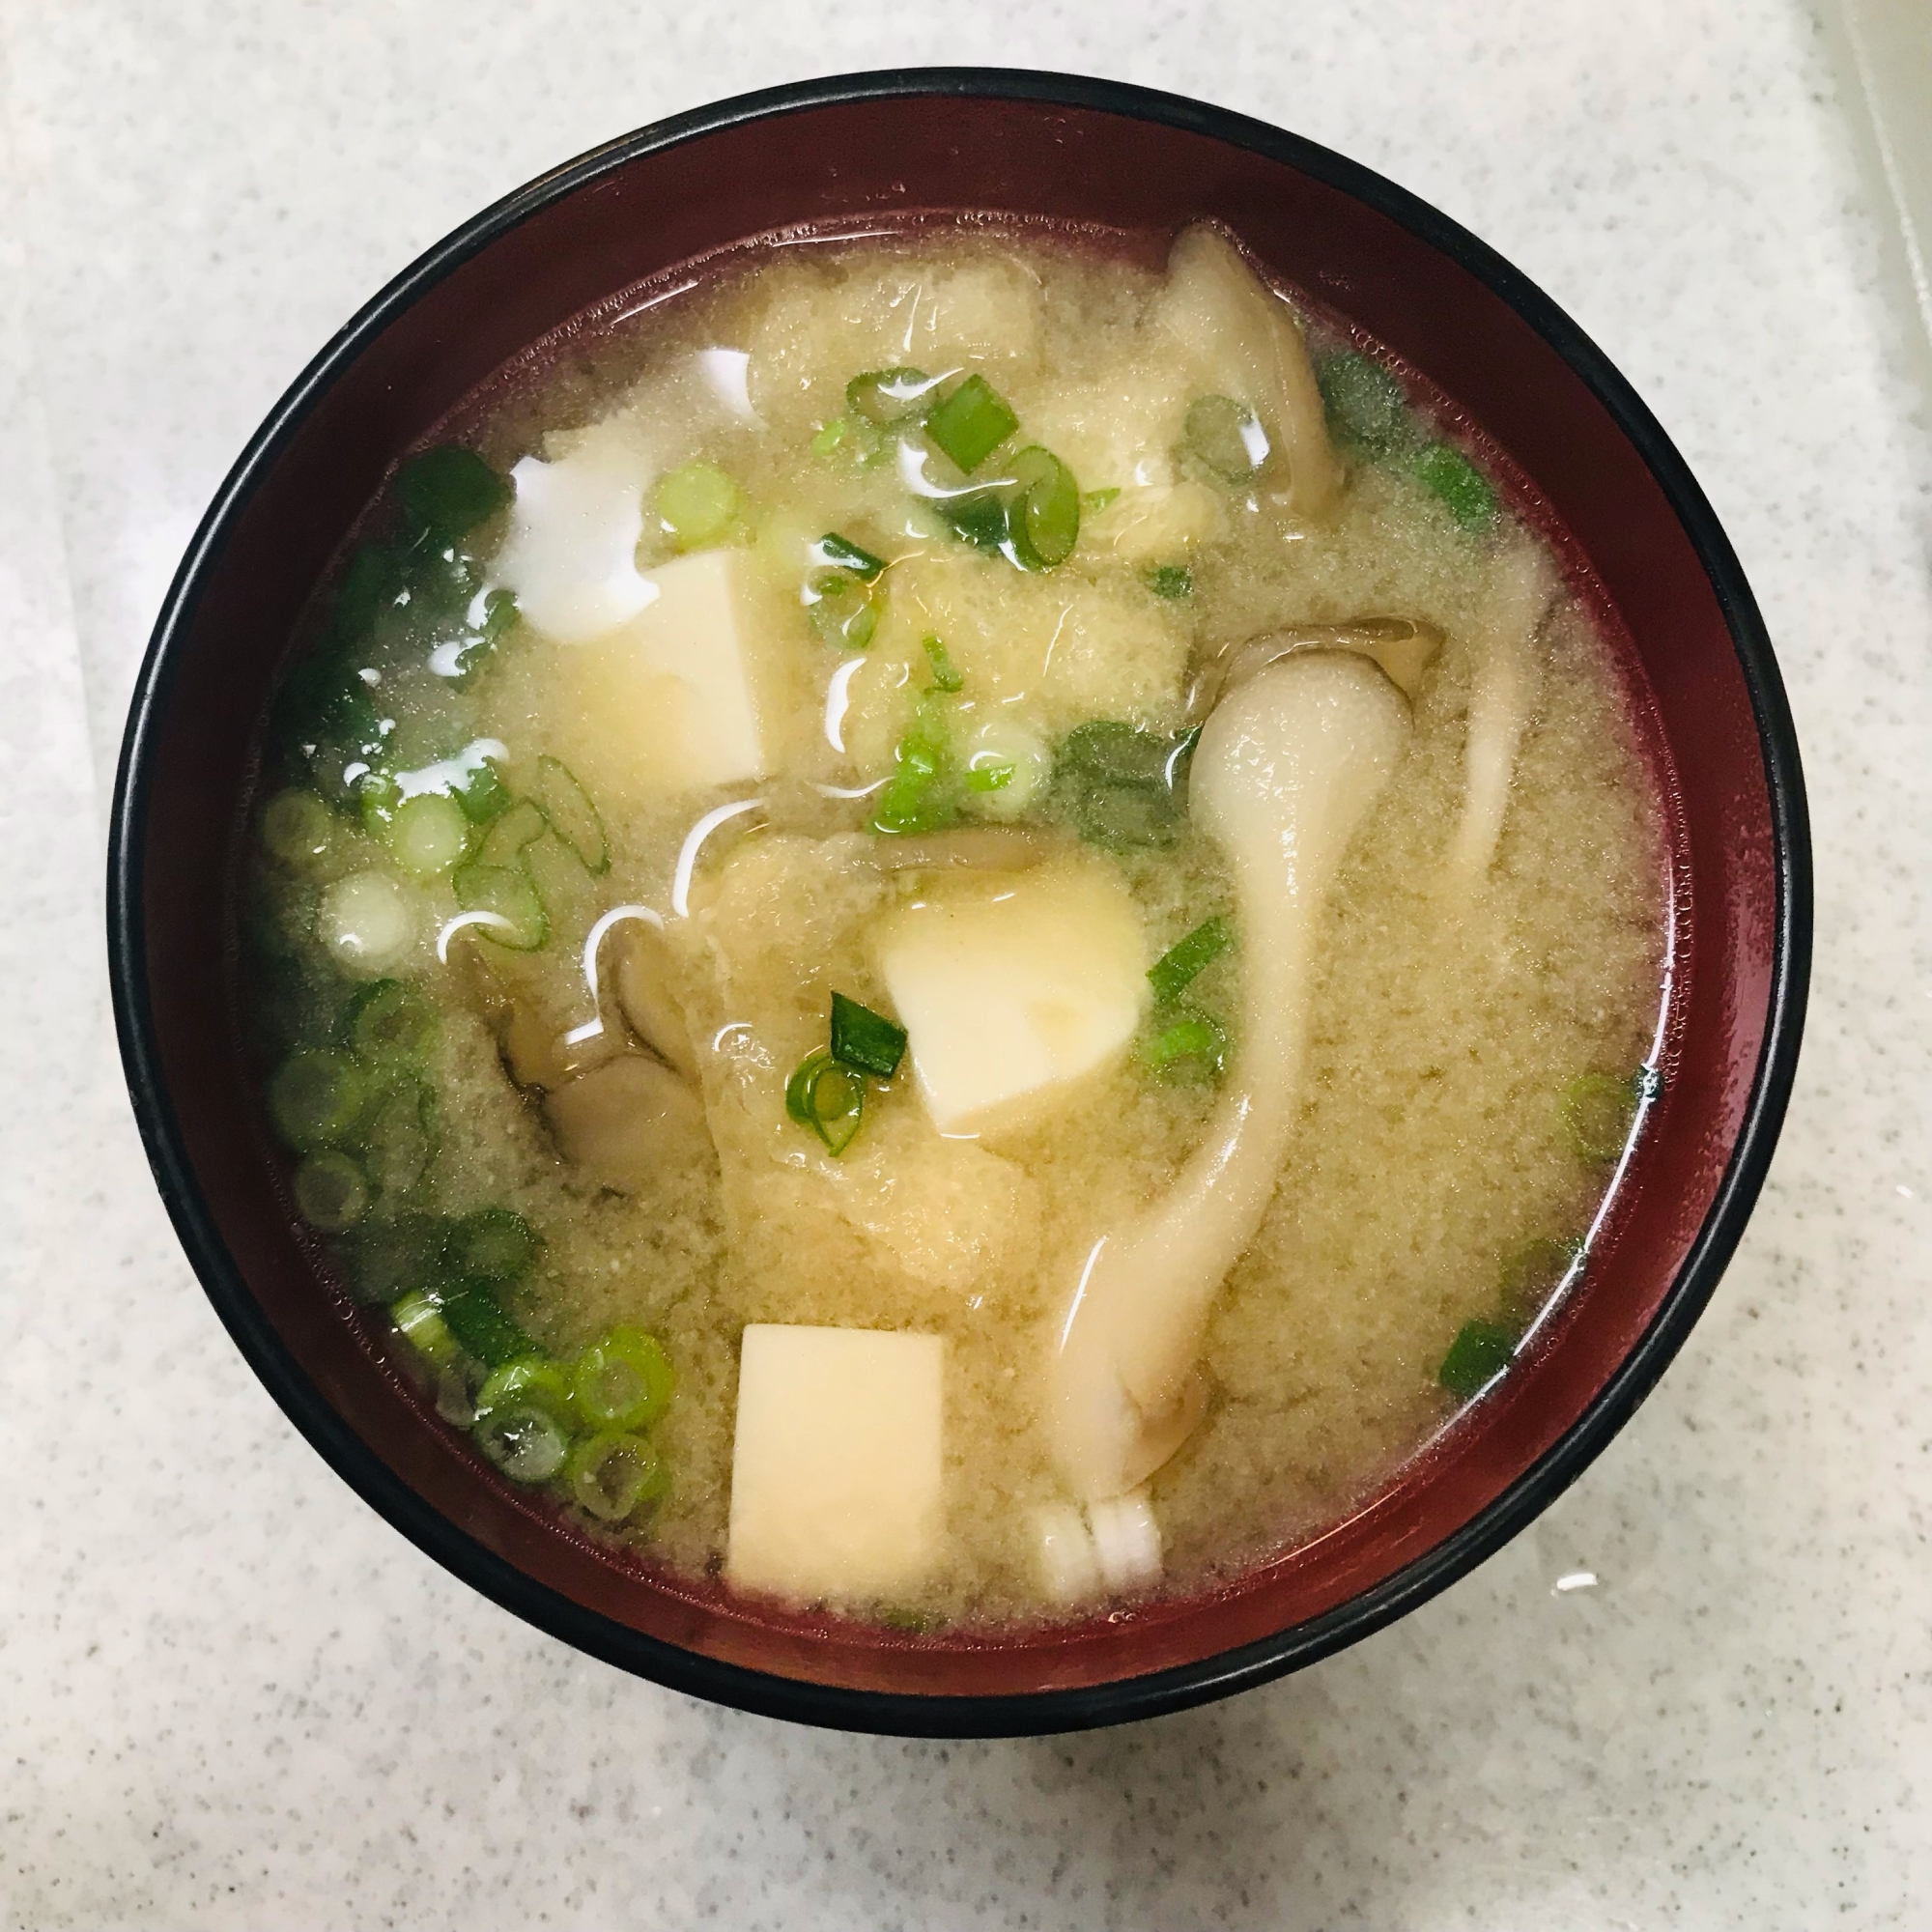 舞茸と豆腐と小揚げの味噌汁